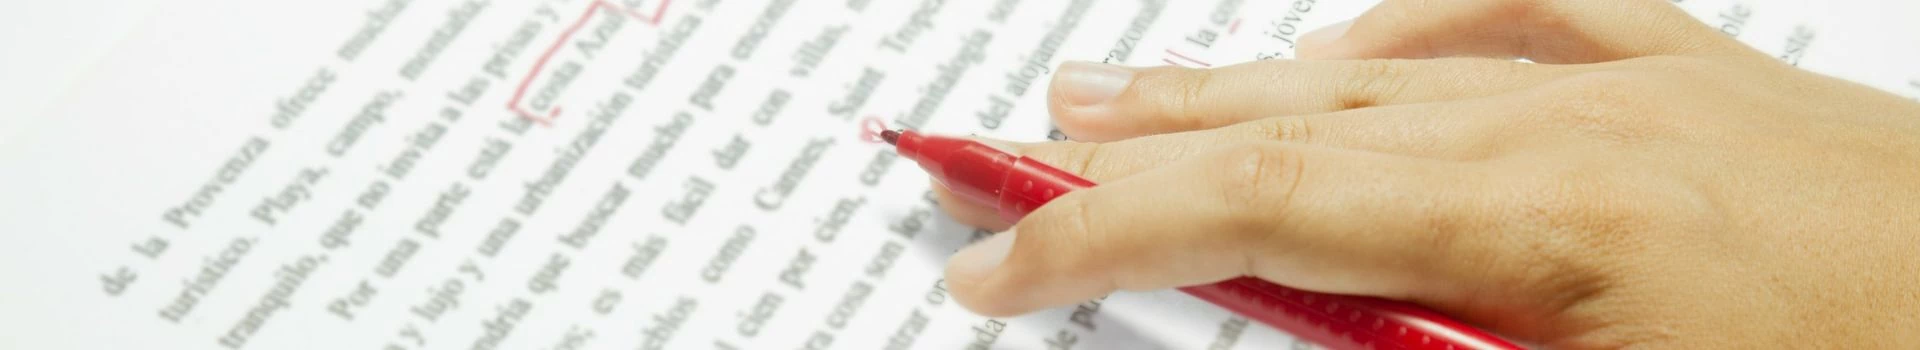 czerwony długopis w dłoni